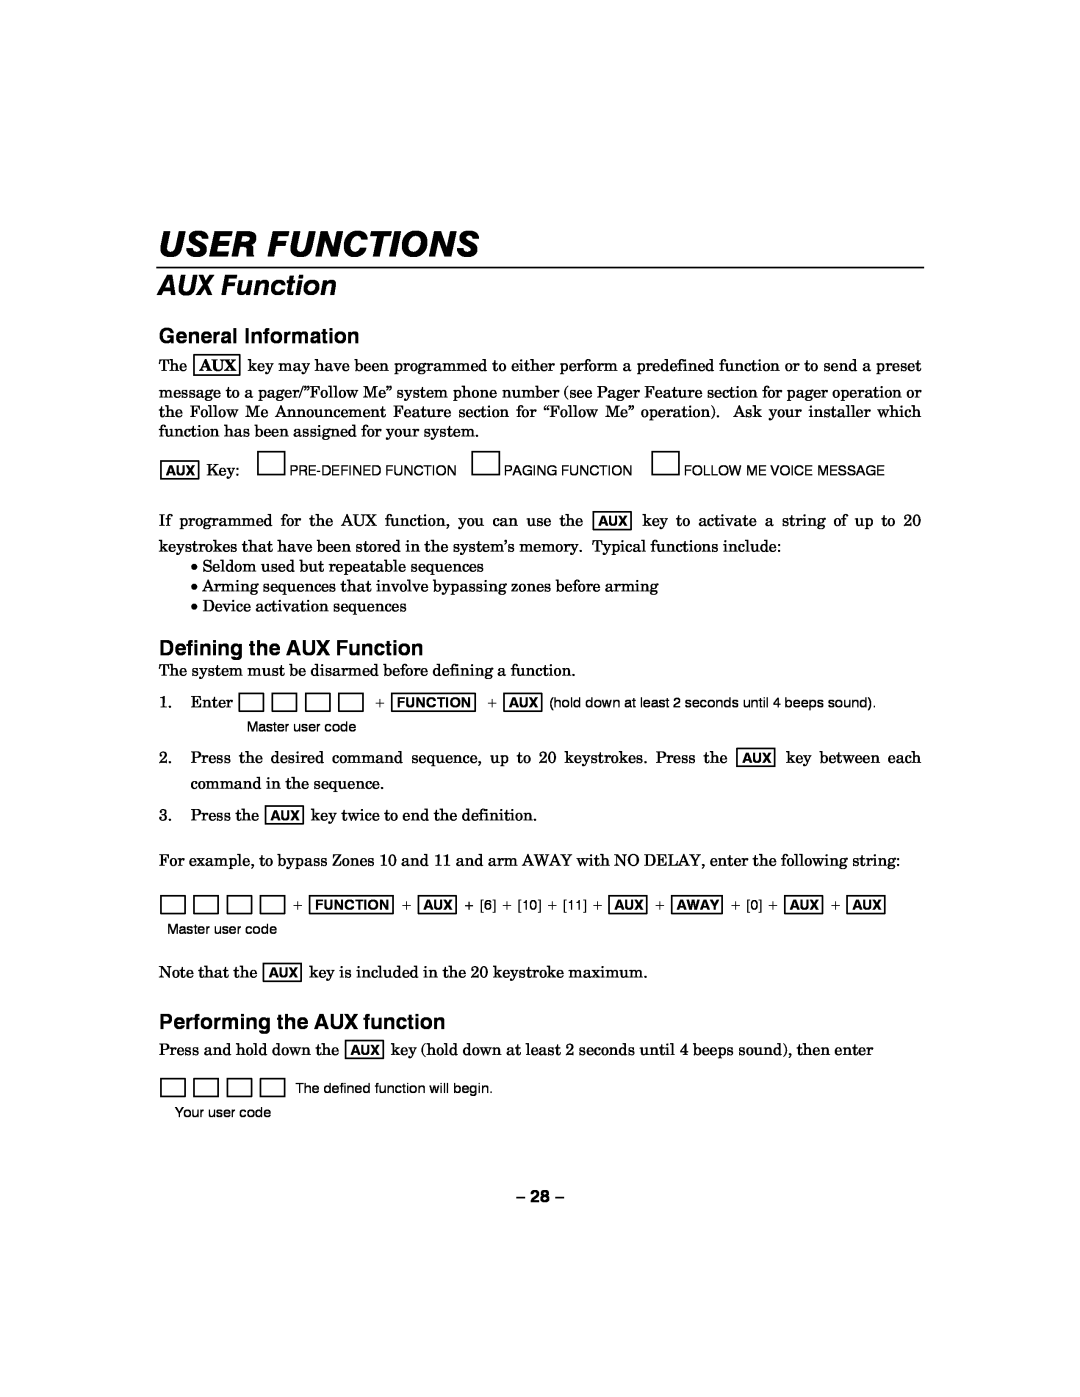 Honeywell LYNXR-I manual Defining the AUX Function, Performing the AUX function, User Functions, General Information 